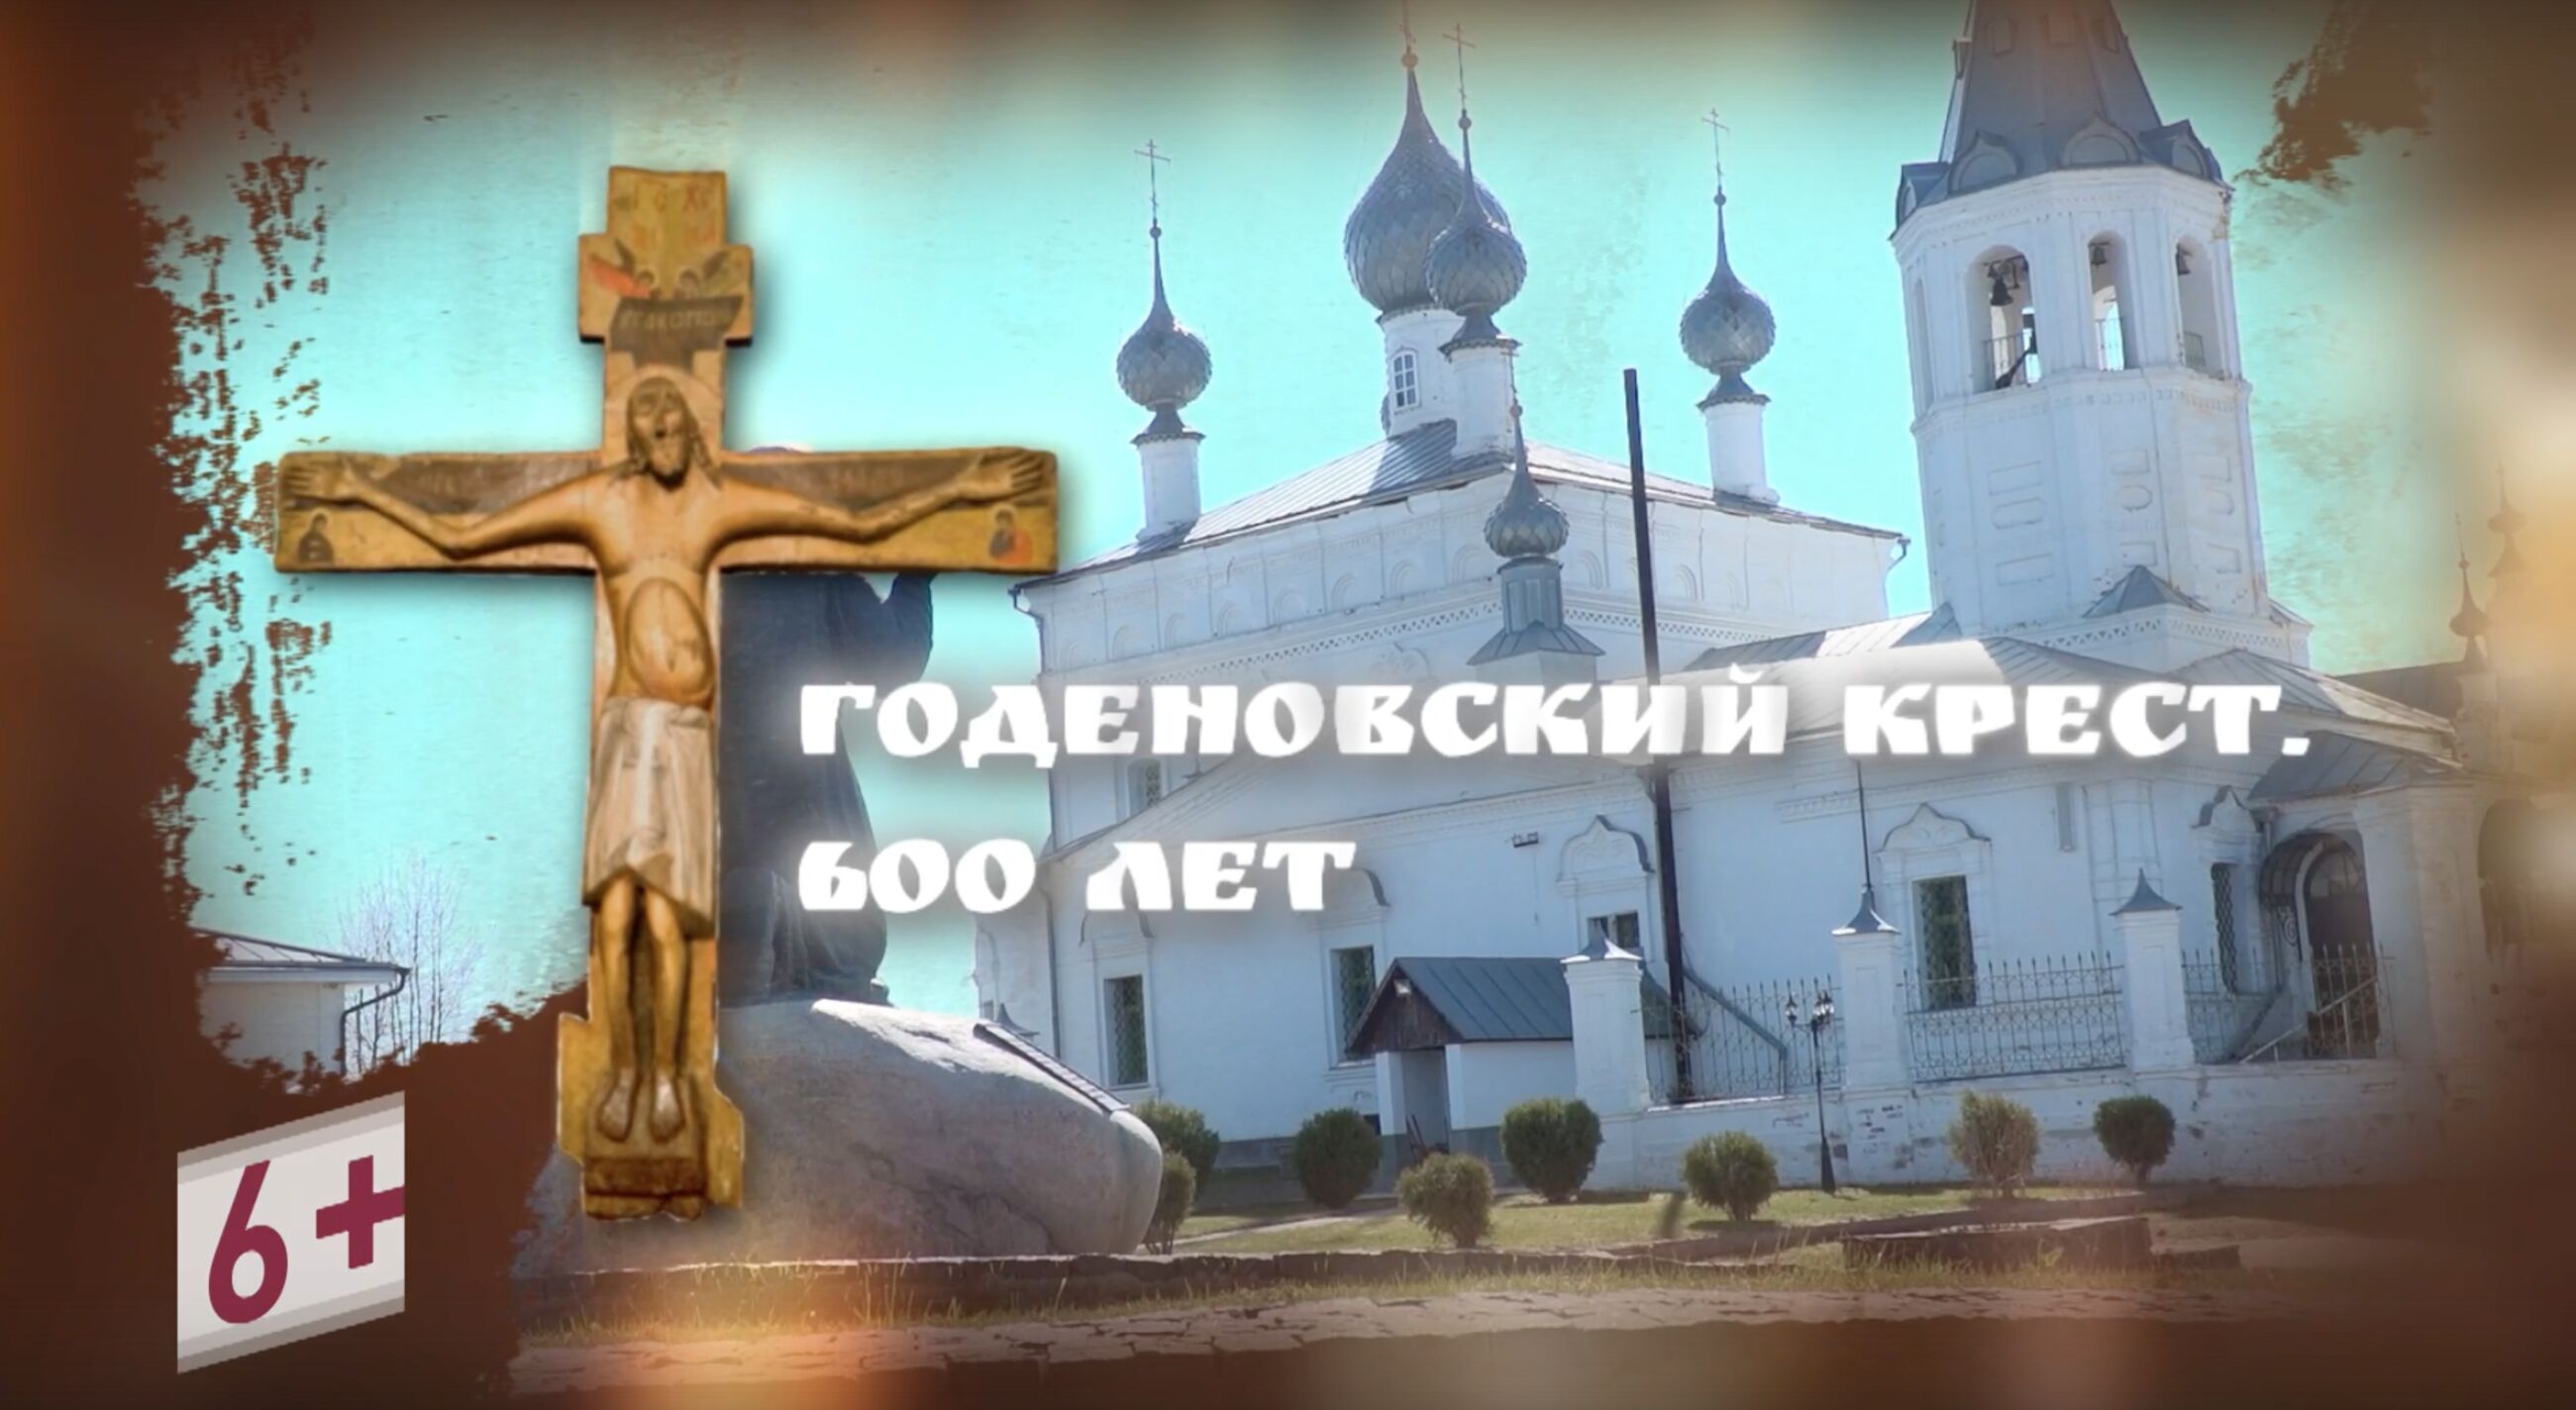 Уникальная реликвия села Годенова: большой репортаж телеканала Первый Ярославский